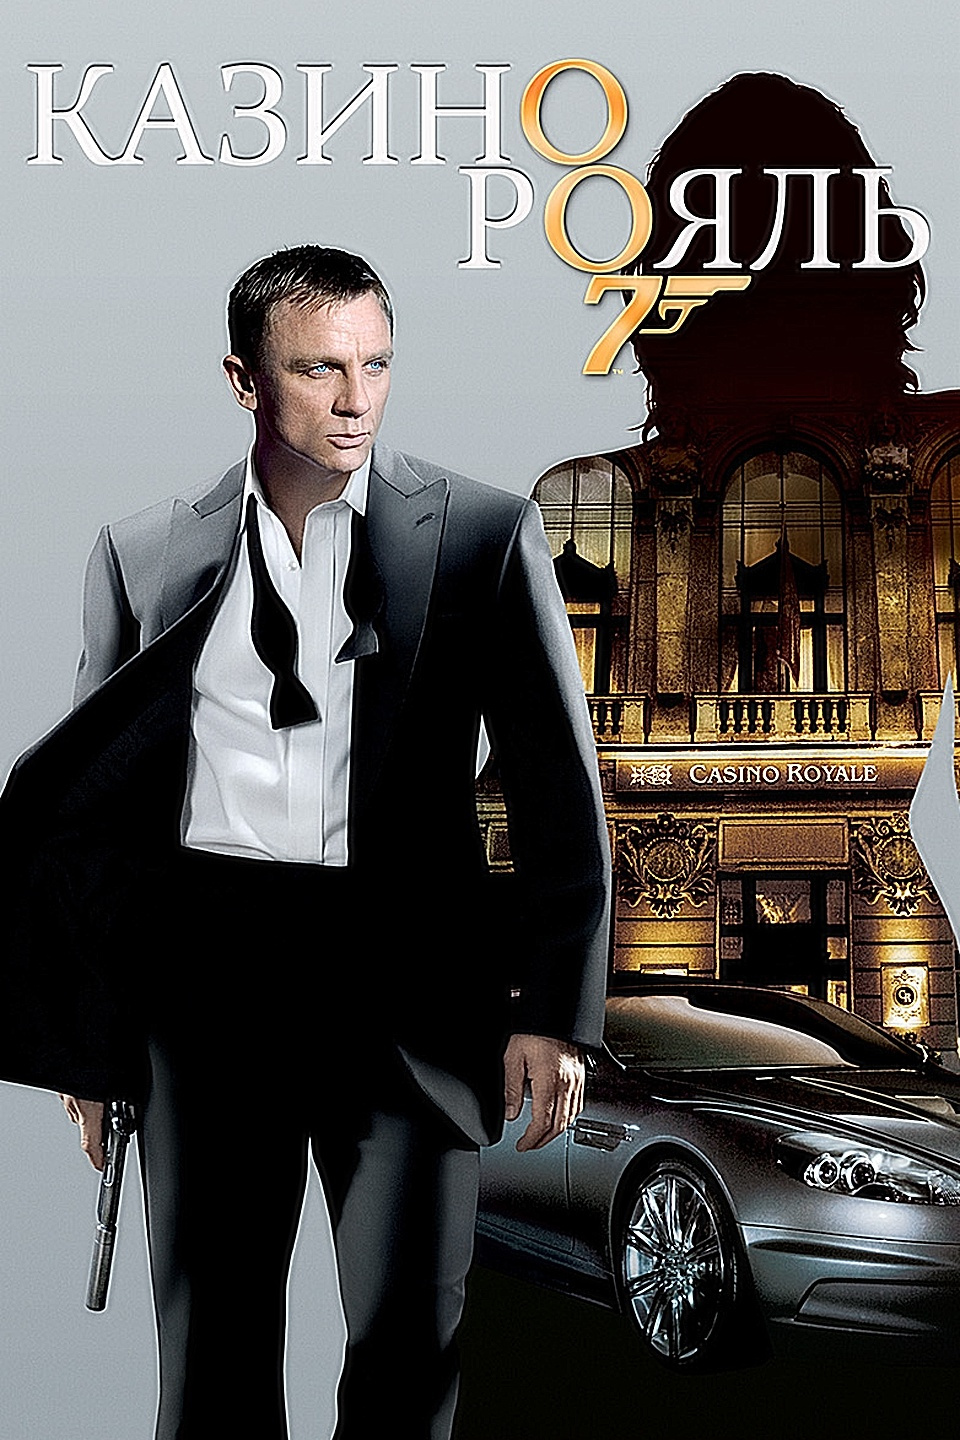 Смотреть фильм агент 007 казино рояль онлайн в хорошем качестве бесплатно спорт ставки в беларуси